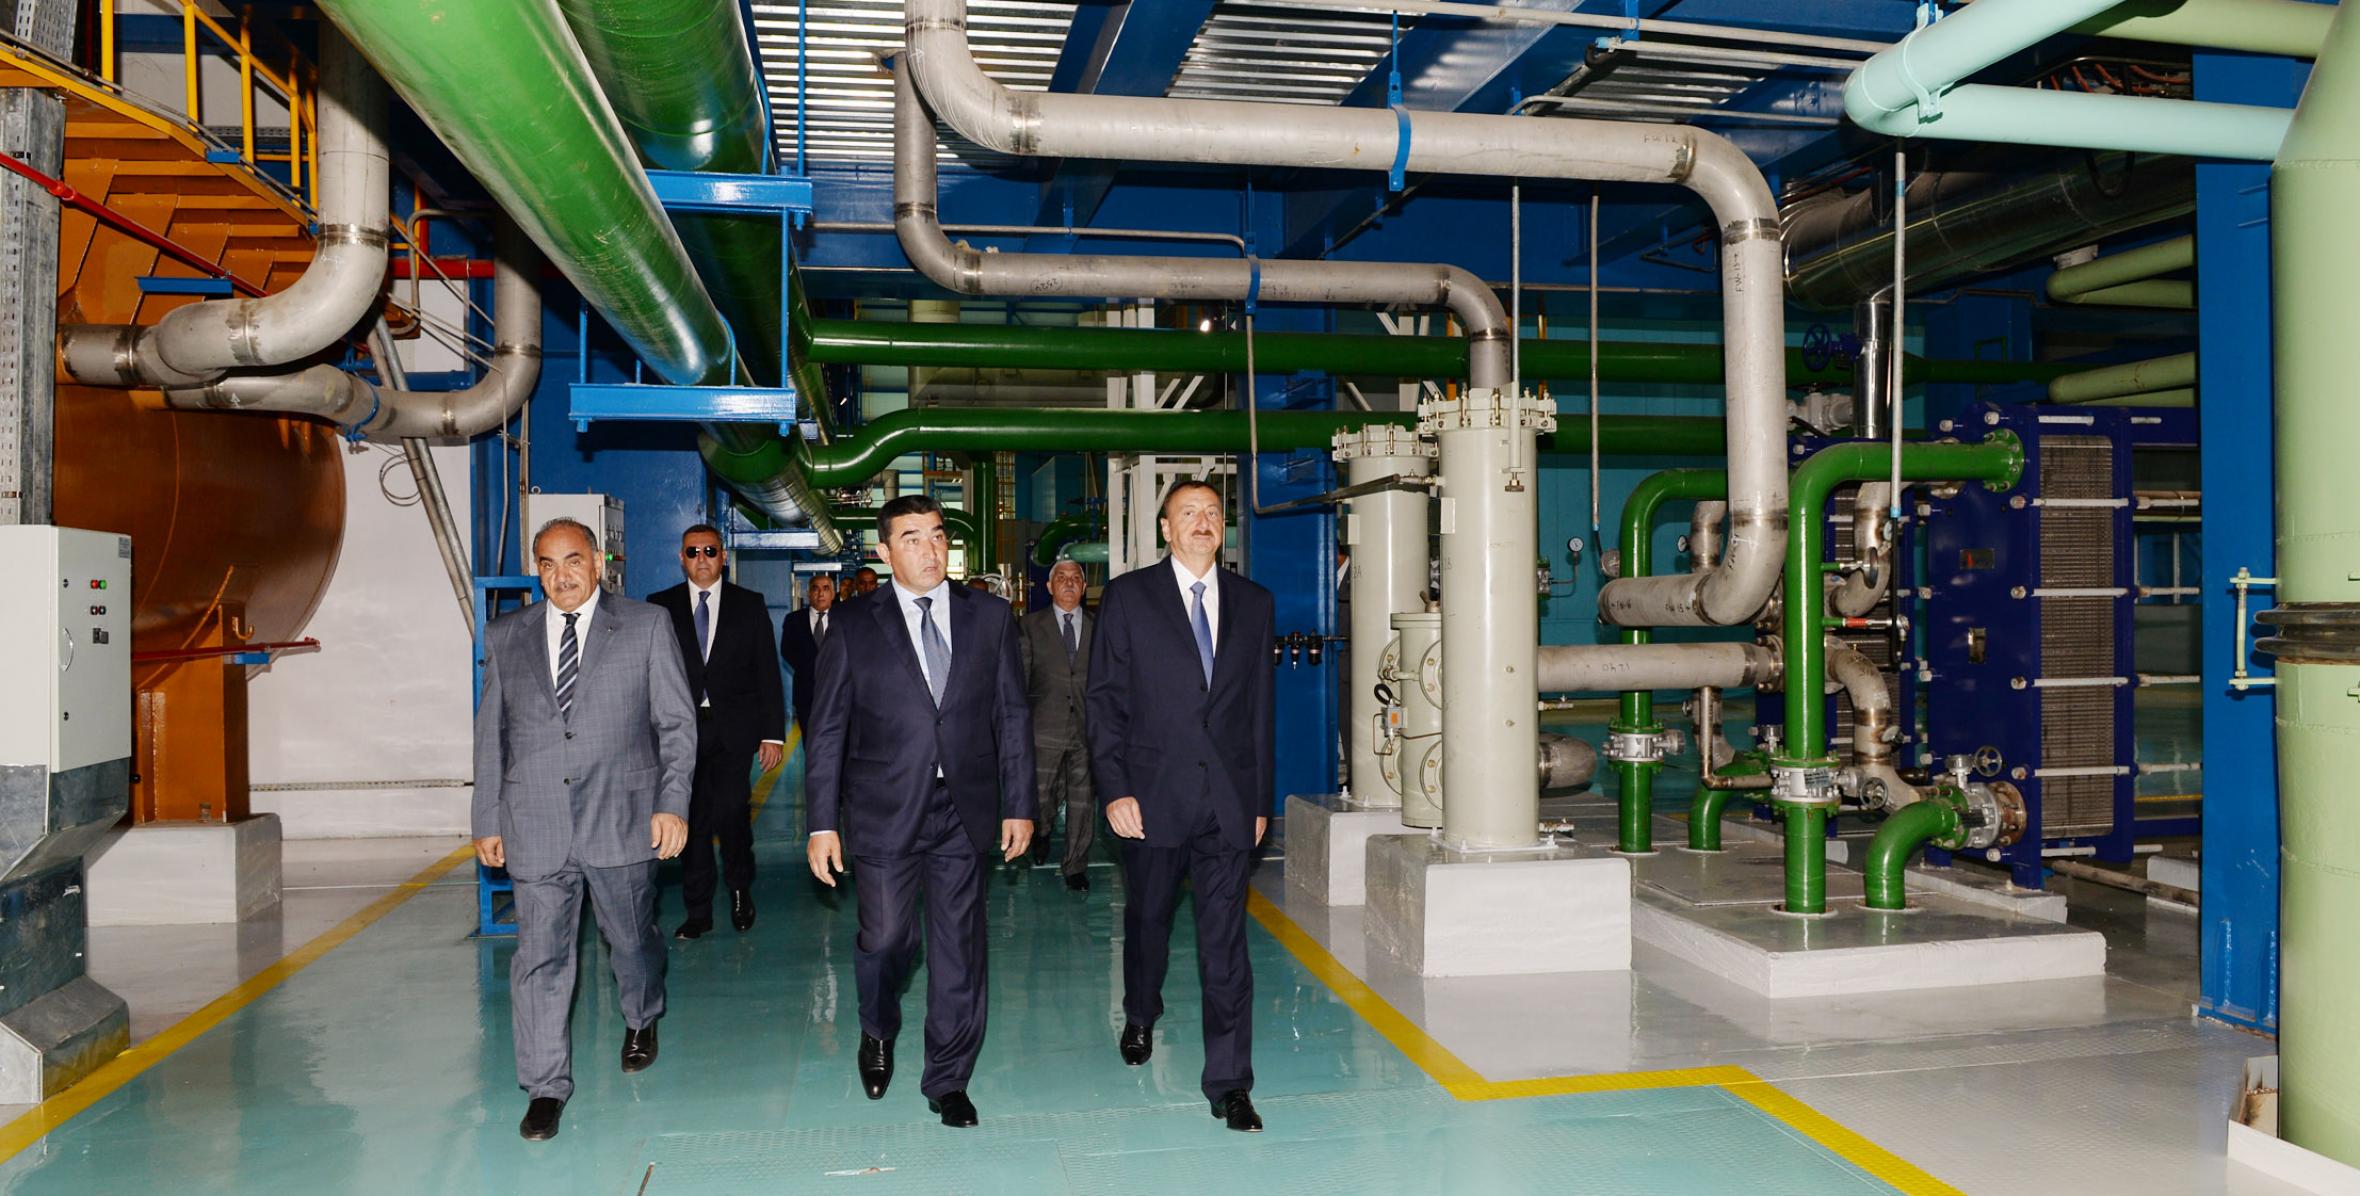 İlham Əliyev “Cənub” Elektrik Stansiyasının açılışında iştirak etmişdir